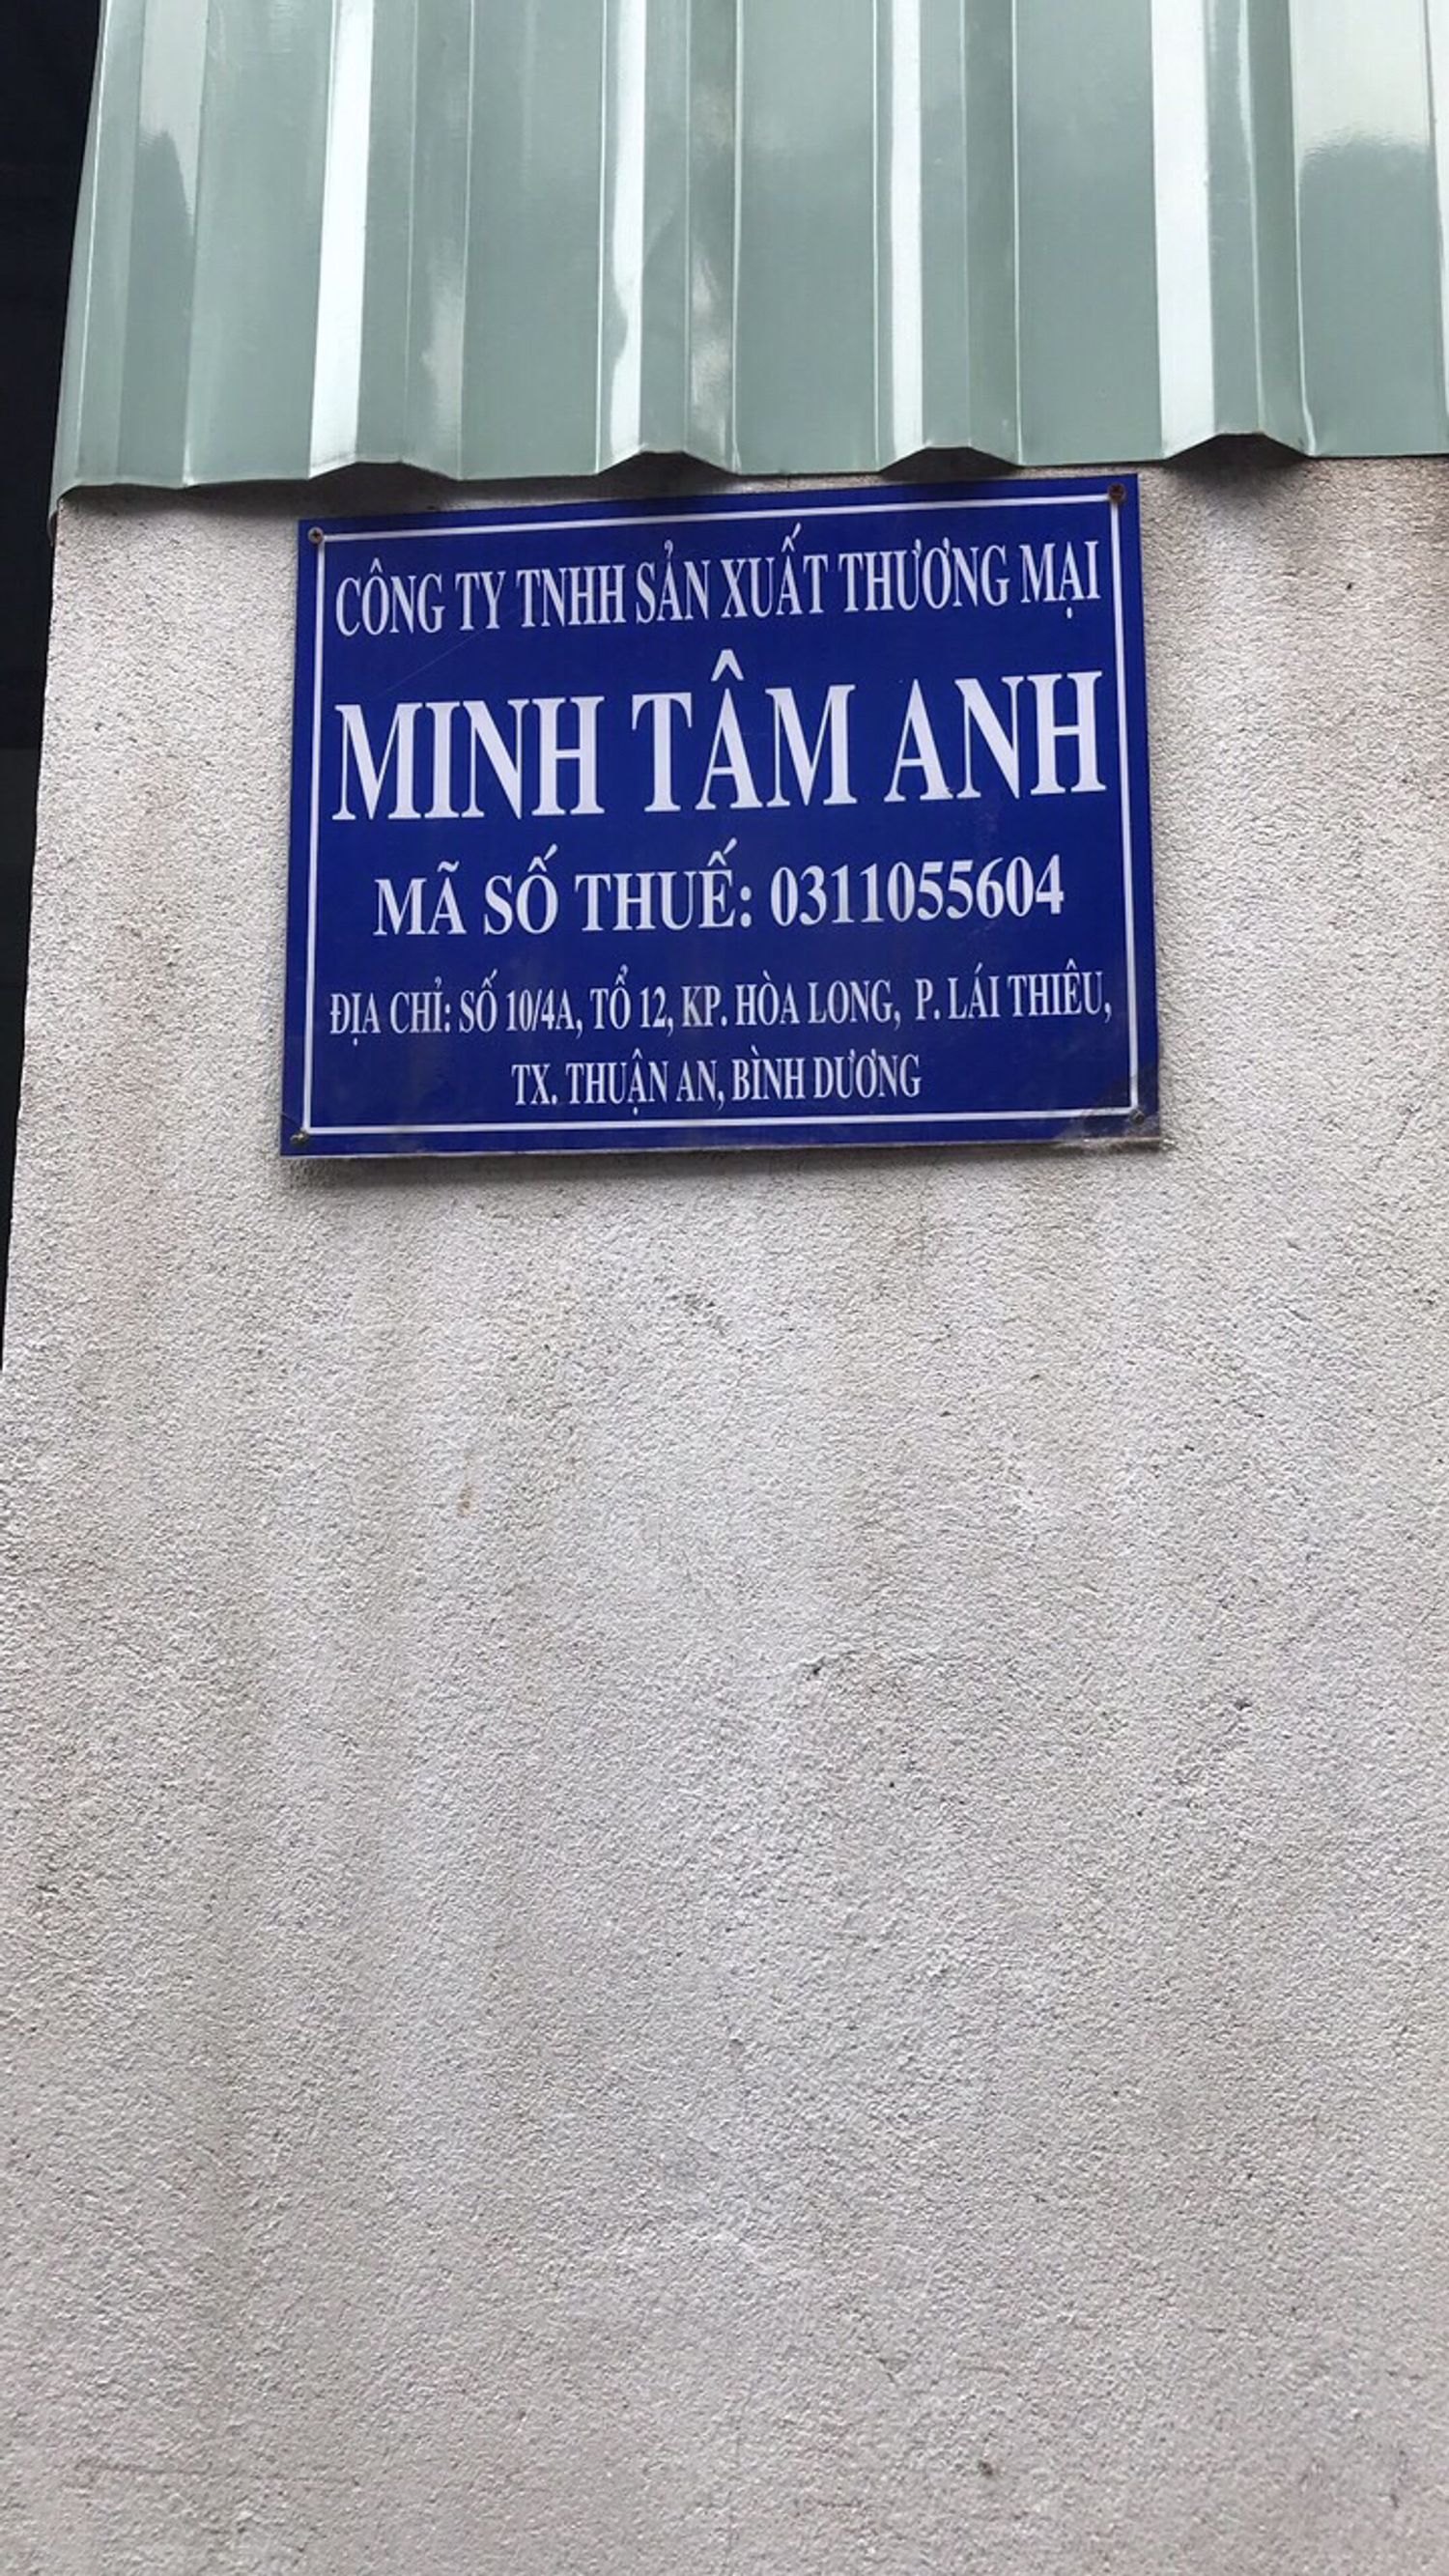 Minh Tâm Anh